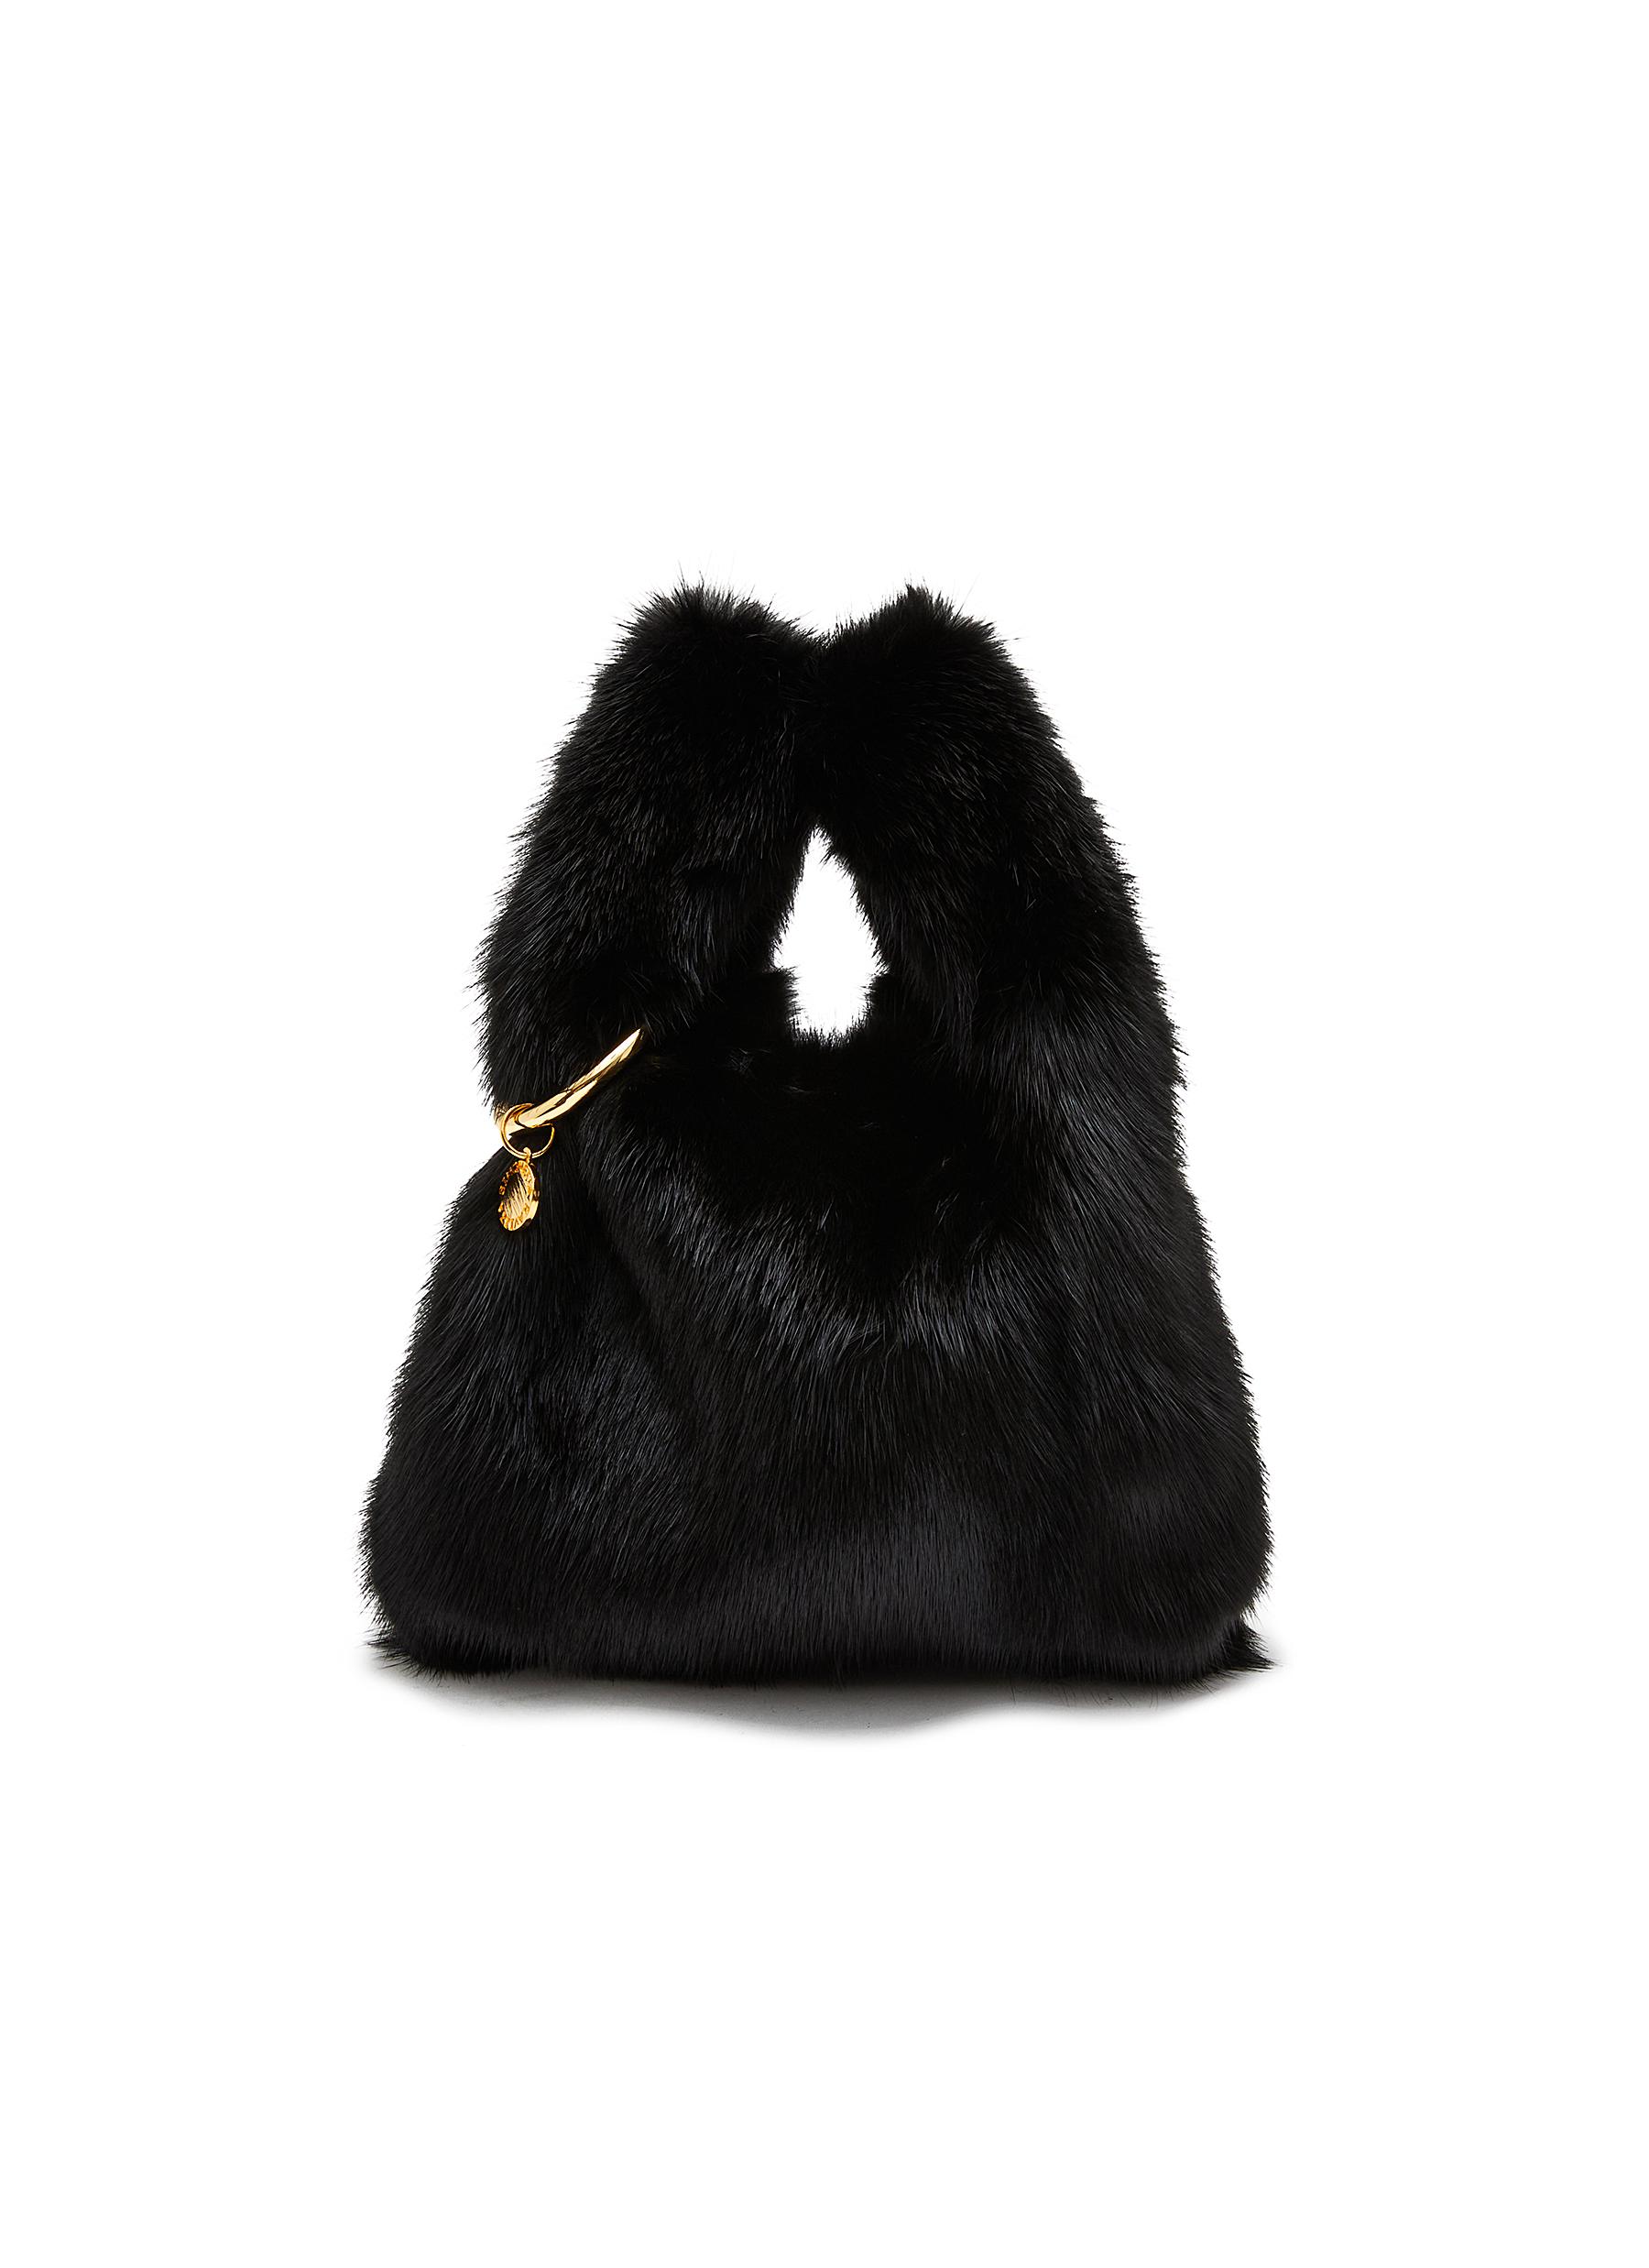 Mink Fur Bag Female Black White Handbag Real Mink Fur Shoulder